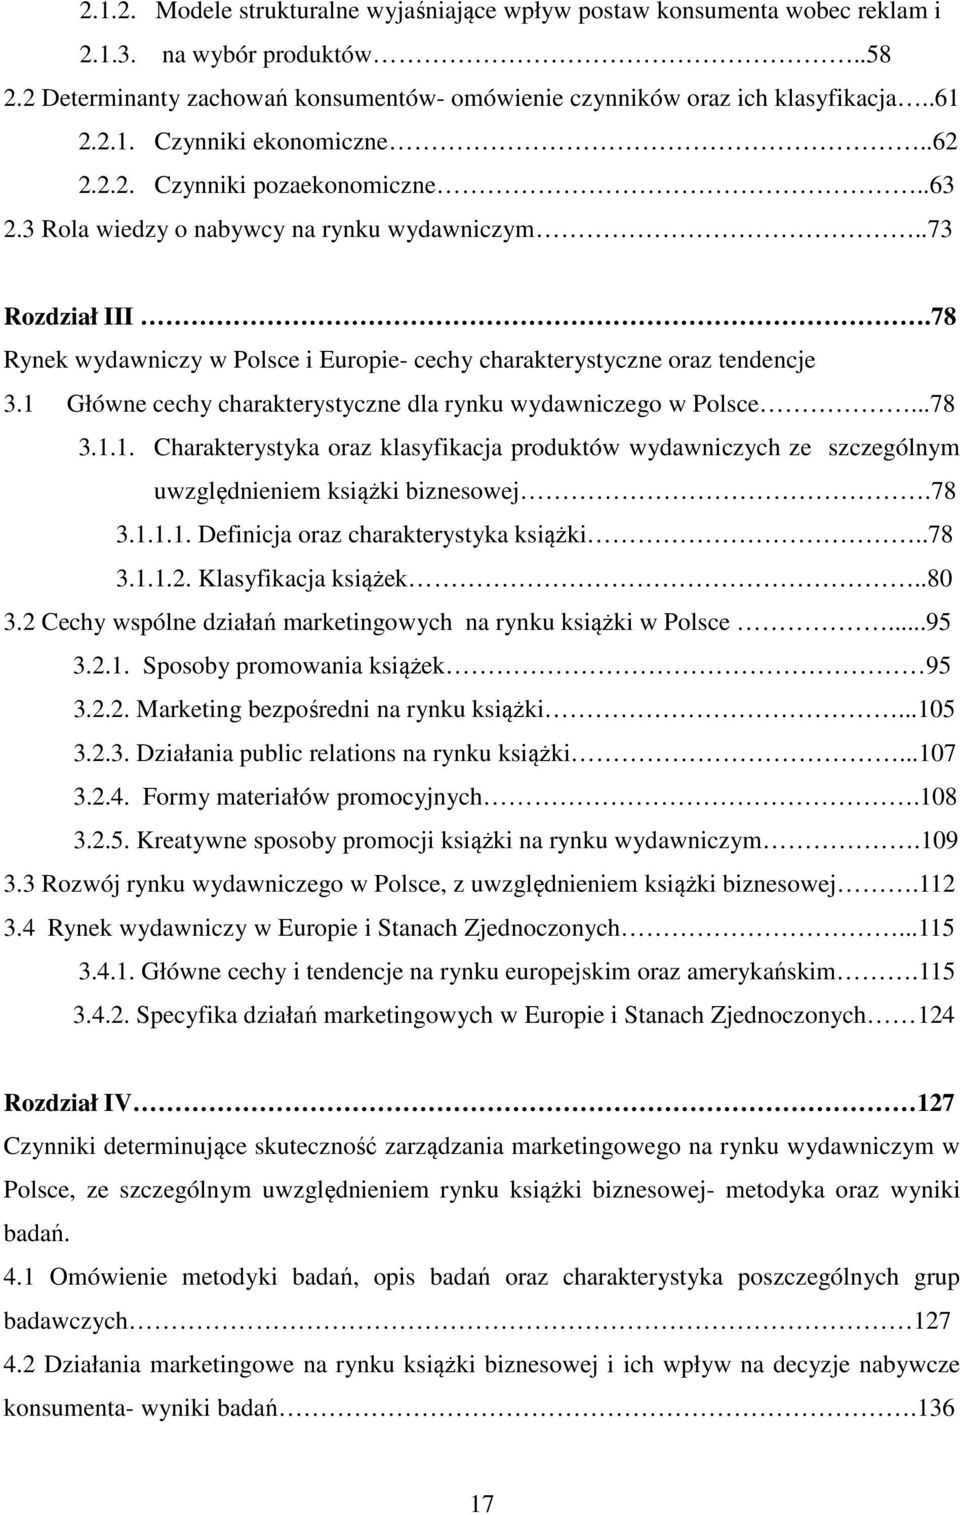 1 Główne cechy charakterystyczne dla rynku wydawniczego w Polsce...78 3.1.1. Charakterystyka oraz klasyfikacja produktów wydawniczych ze szczególnym uwzględnieniem książki biznesowej.78 3.1.1.1. Definicja oraz charakterystyka książki.